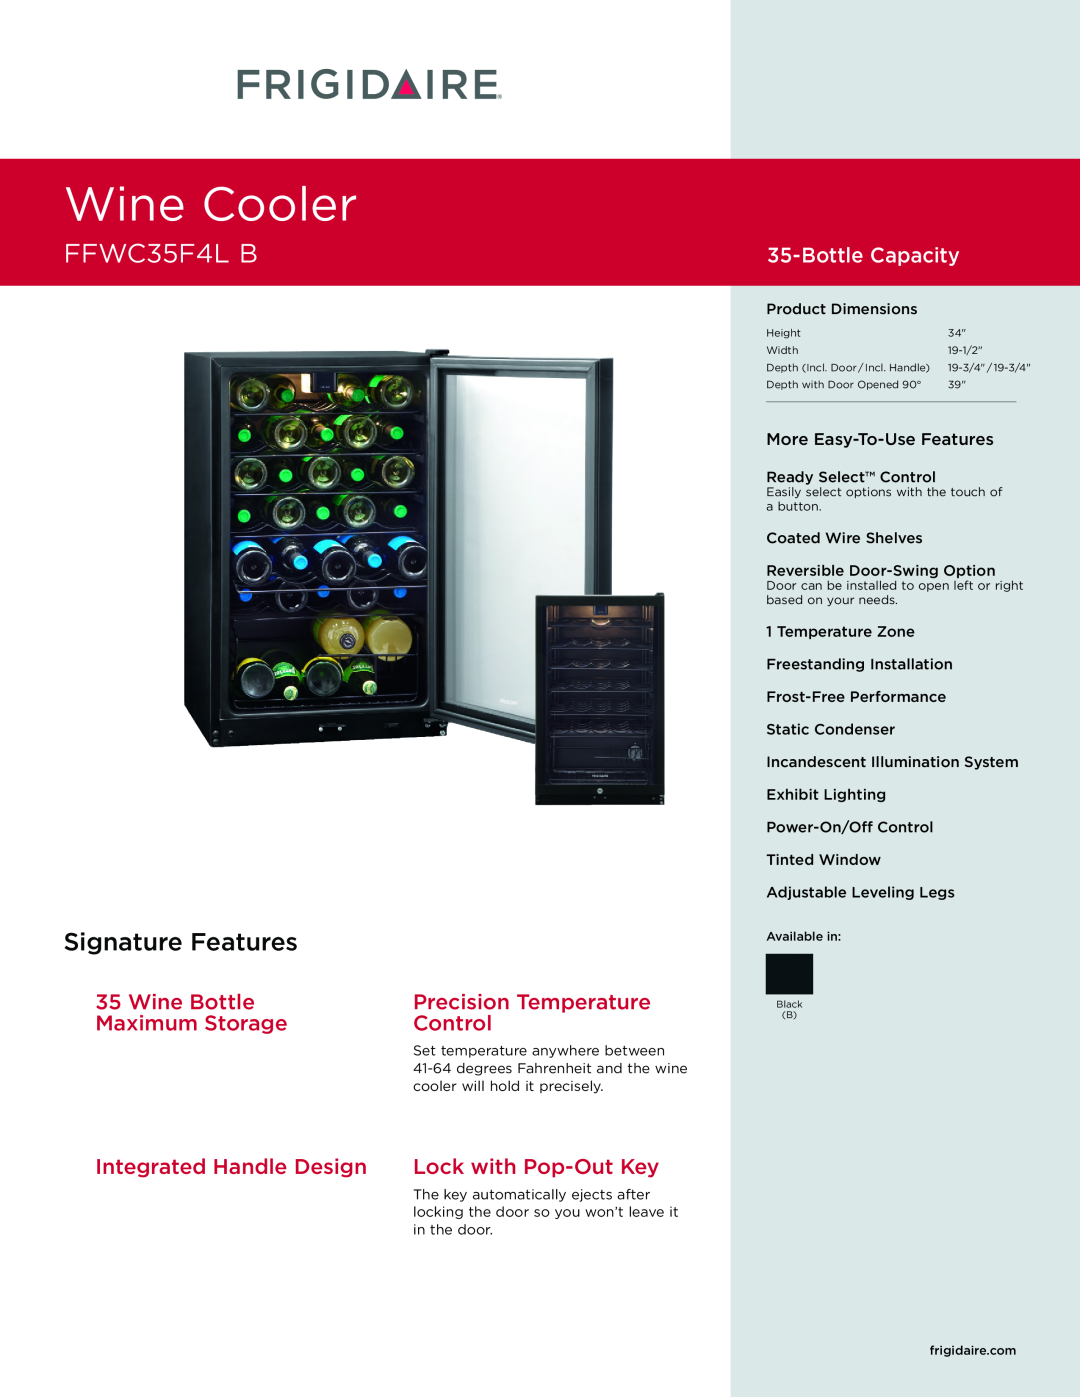 Frigidaire FFWC35F4L B dimensions Wine Cooler, Signature Features, Wine Bottle, Precision Temperature, Maximum Storage 